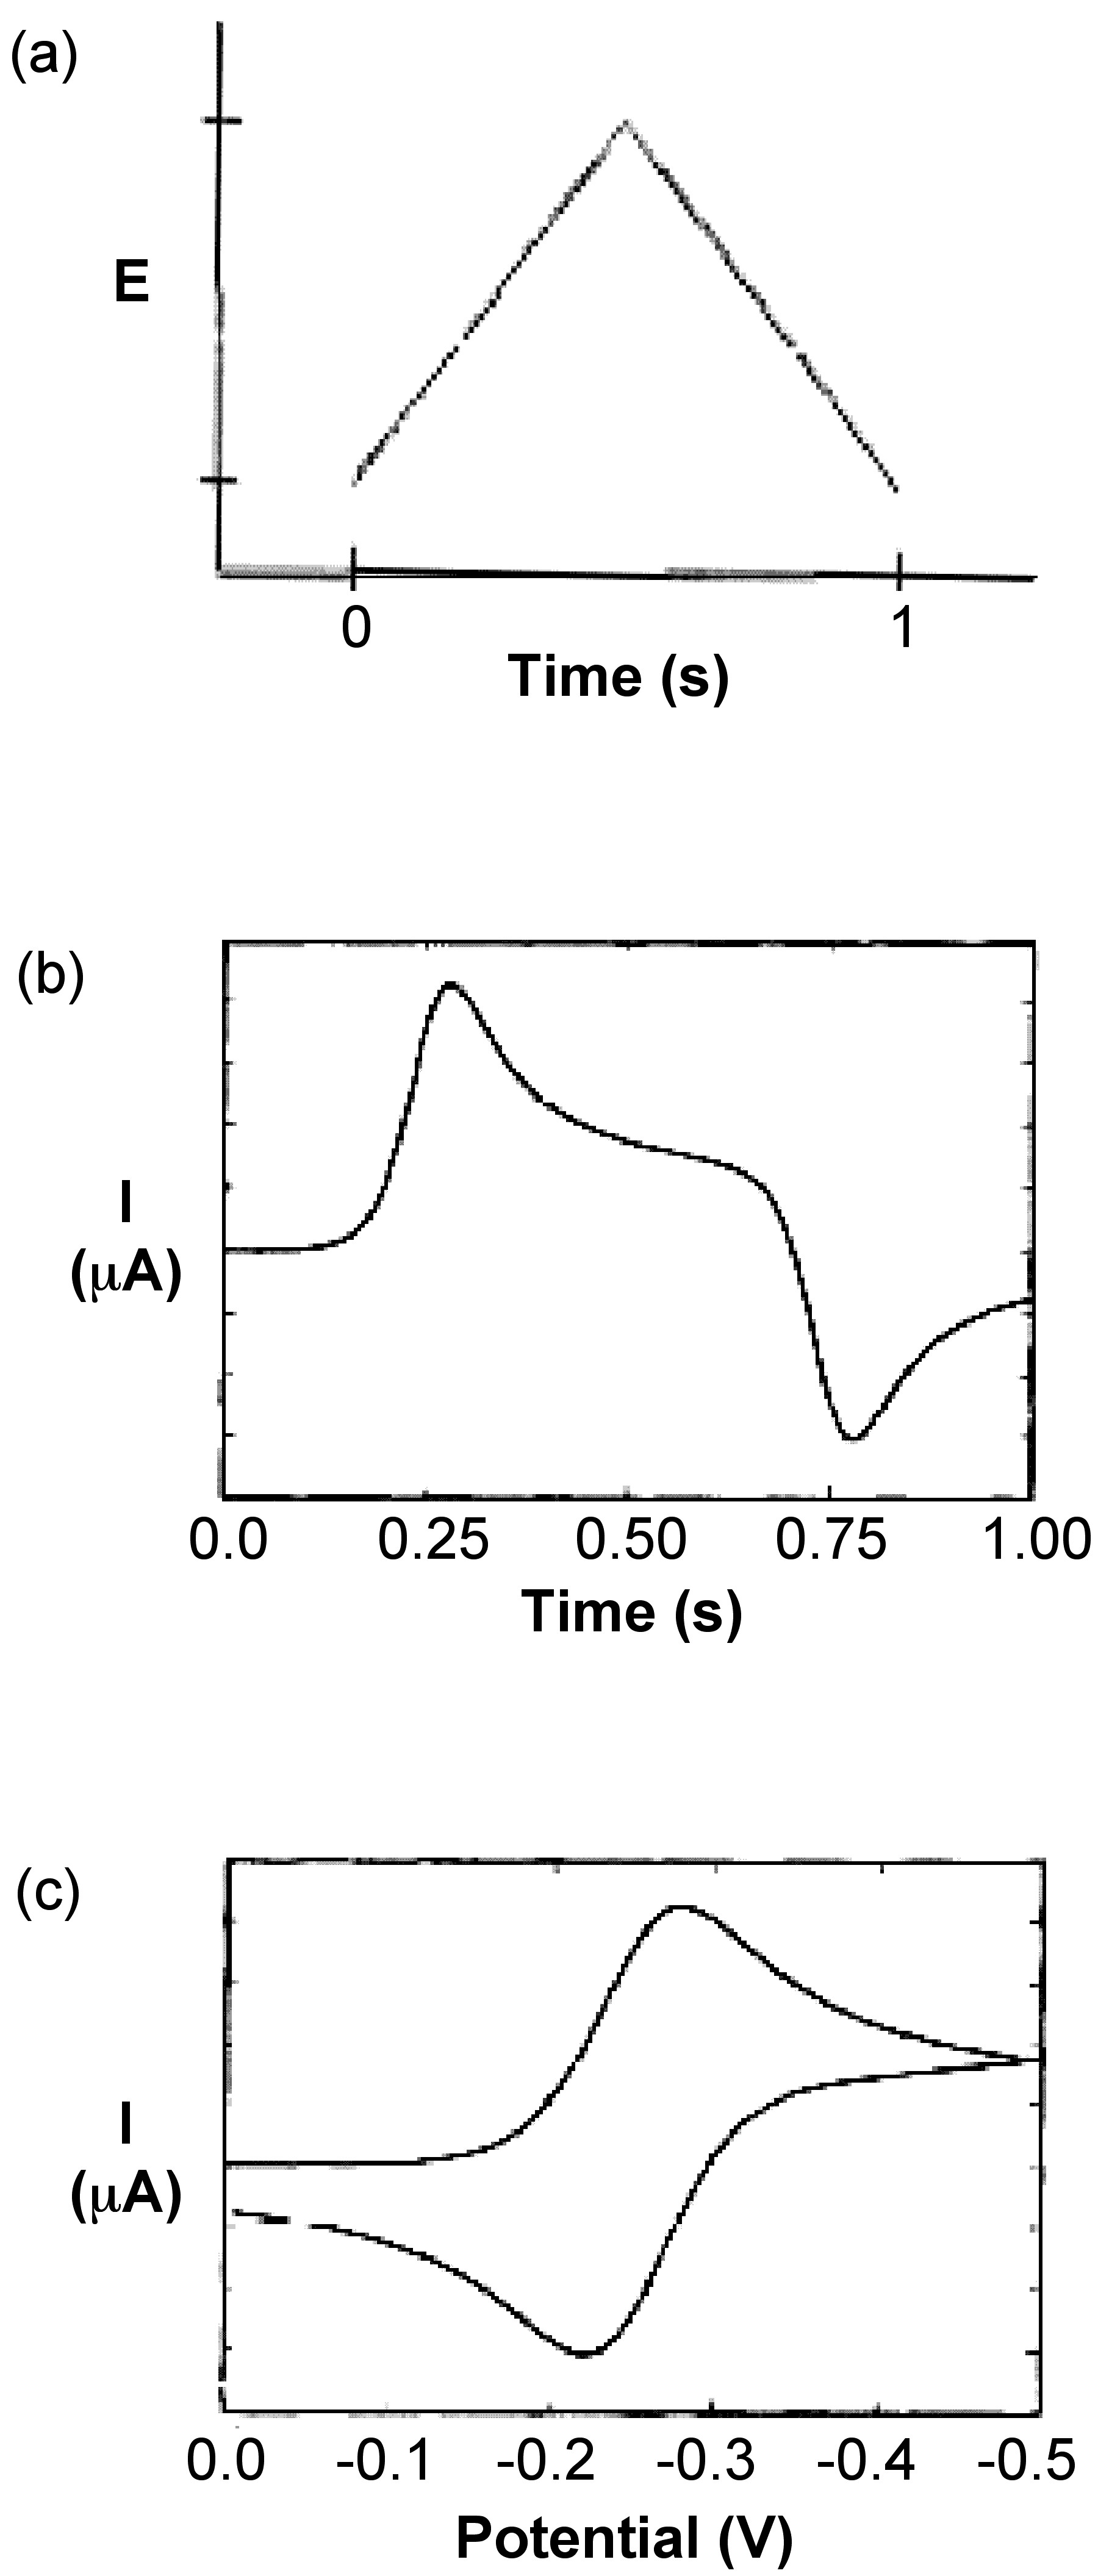 Cambios de onda potencial con el tiempo (a); respuesta actual con el tiempo (b); representaciones actual-potencial (c)